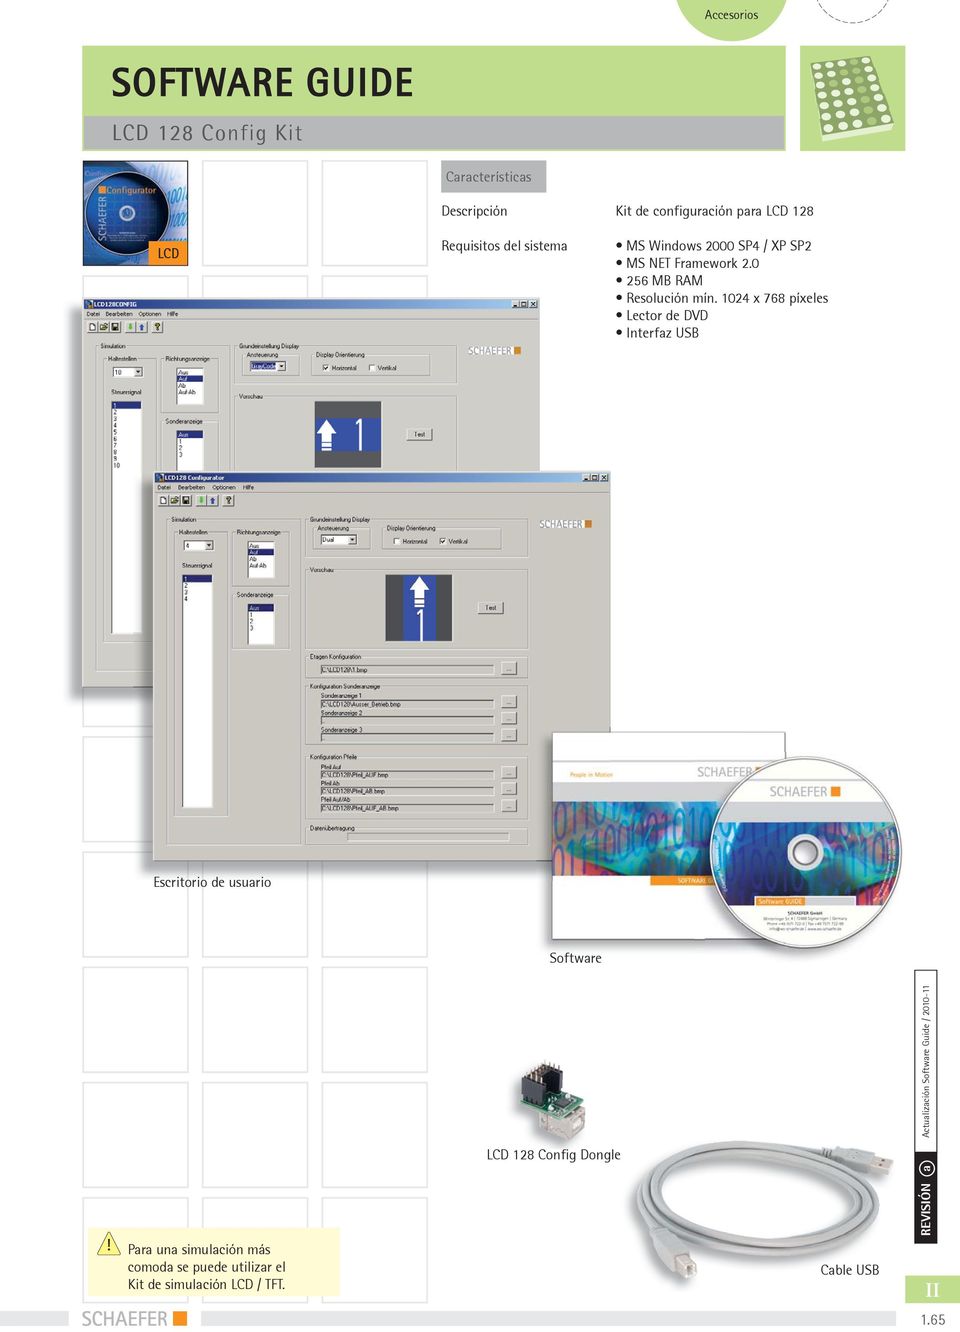 24 x 768 píxeles Lector de DVD Interfaz USB Escritorio de usuario Software Actualización Software Guide /